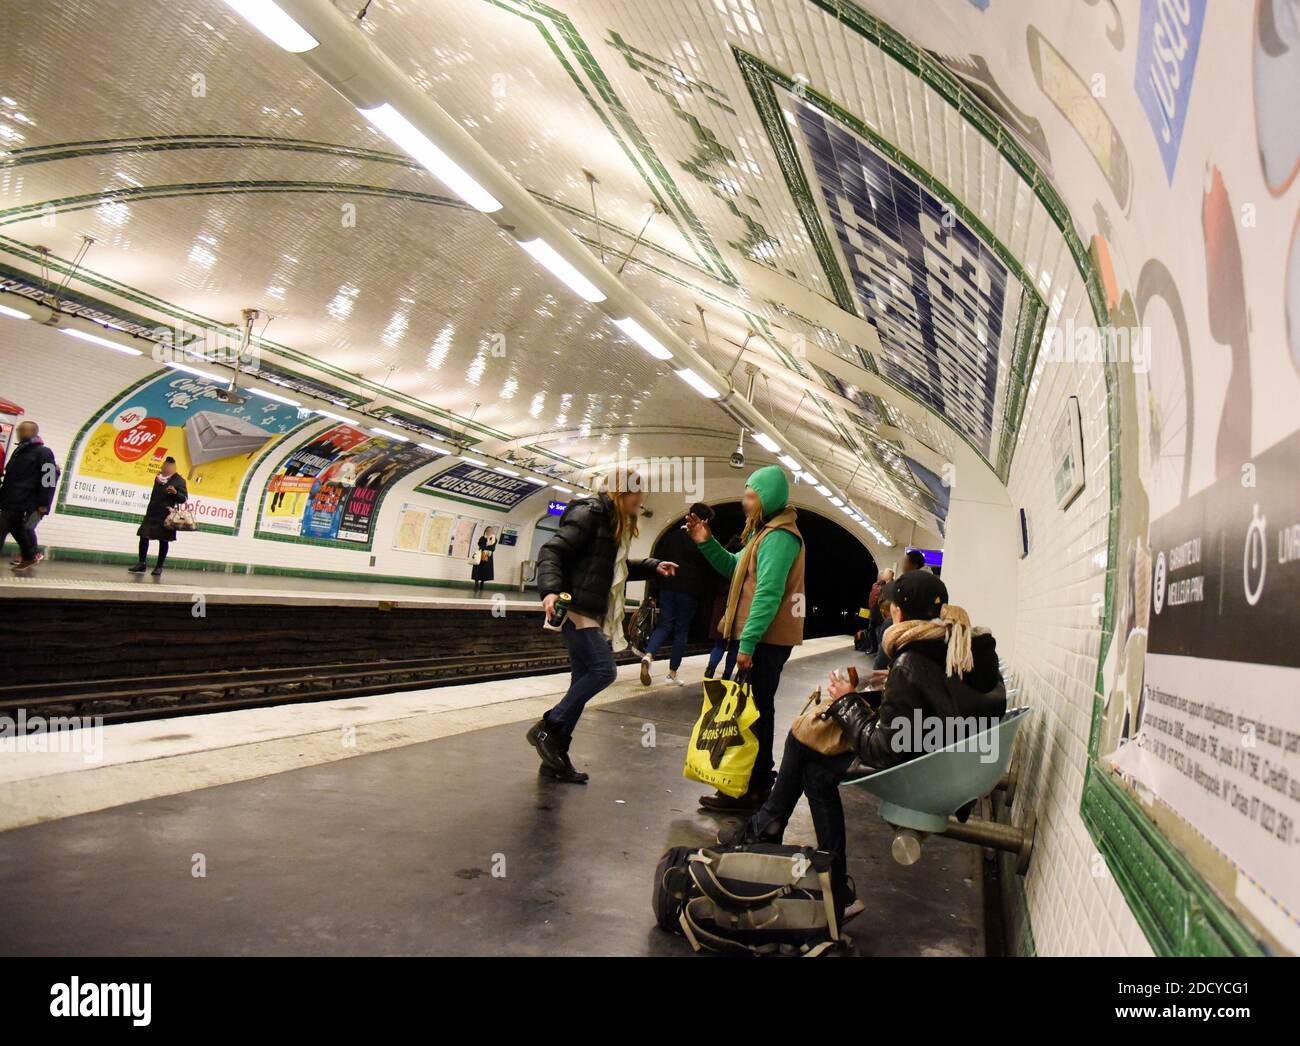 Das Phänomen der Riss Raucher in der Pariser Metro, die manchmal treibt Zugfahrer nicht am Bahnhof zu stoppen und beunruhigt Benutzer. Pariser Metrofahrer prangern die Unsicherheit in einigen Stationen an, insbesondere aufgrund der Anwesenheit von Crack-Rauchern und Drogenhändlern. 'Die U-Bahn-Zombies', wie Le Parisien es vor ein paar Tagen nannte. Die Tageszeitung zeigt Szenen von Junkies, die ihre Risspfeife am Kai unter den staunenden und verängstigten Augen des Gebrauchs zünden. Januar 20, 2018. Foto von Alain Apaydin/ABACAPRESS.COM Stockfoto